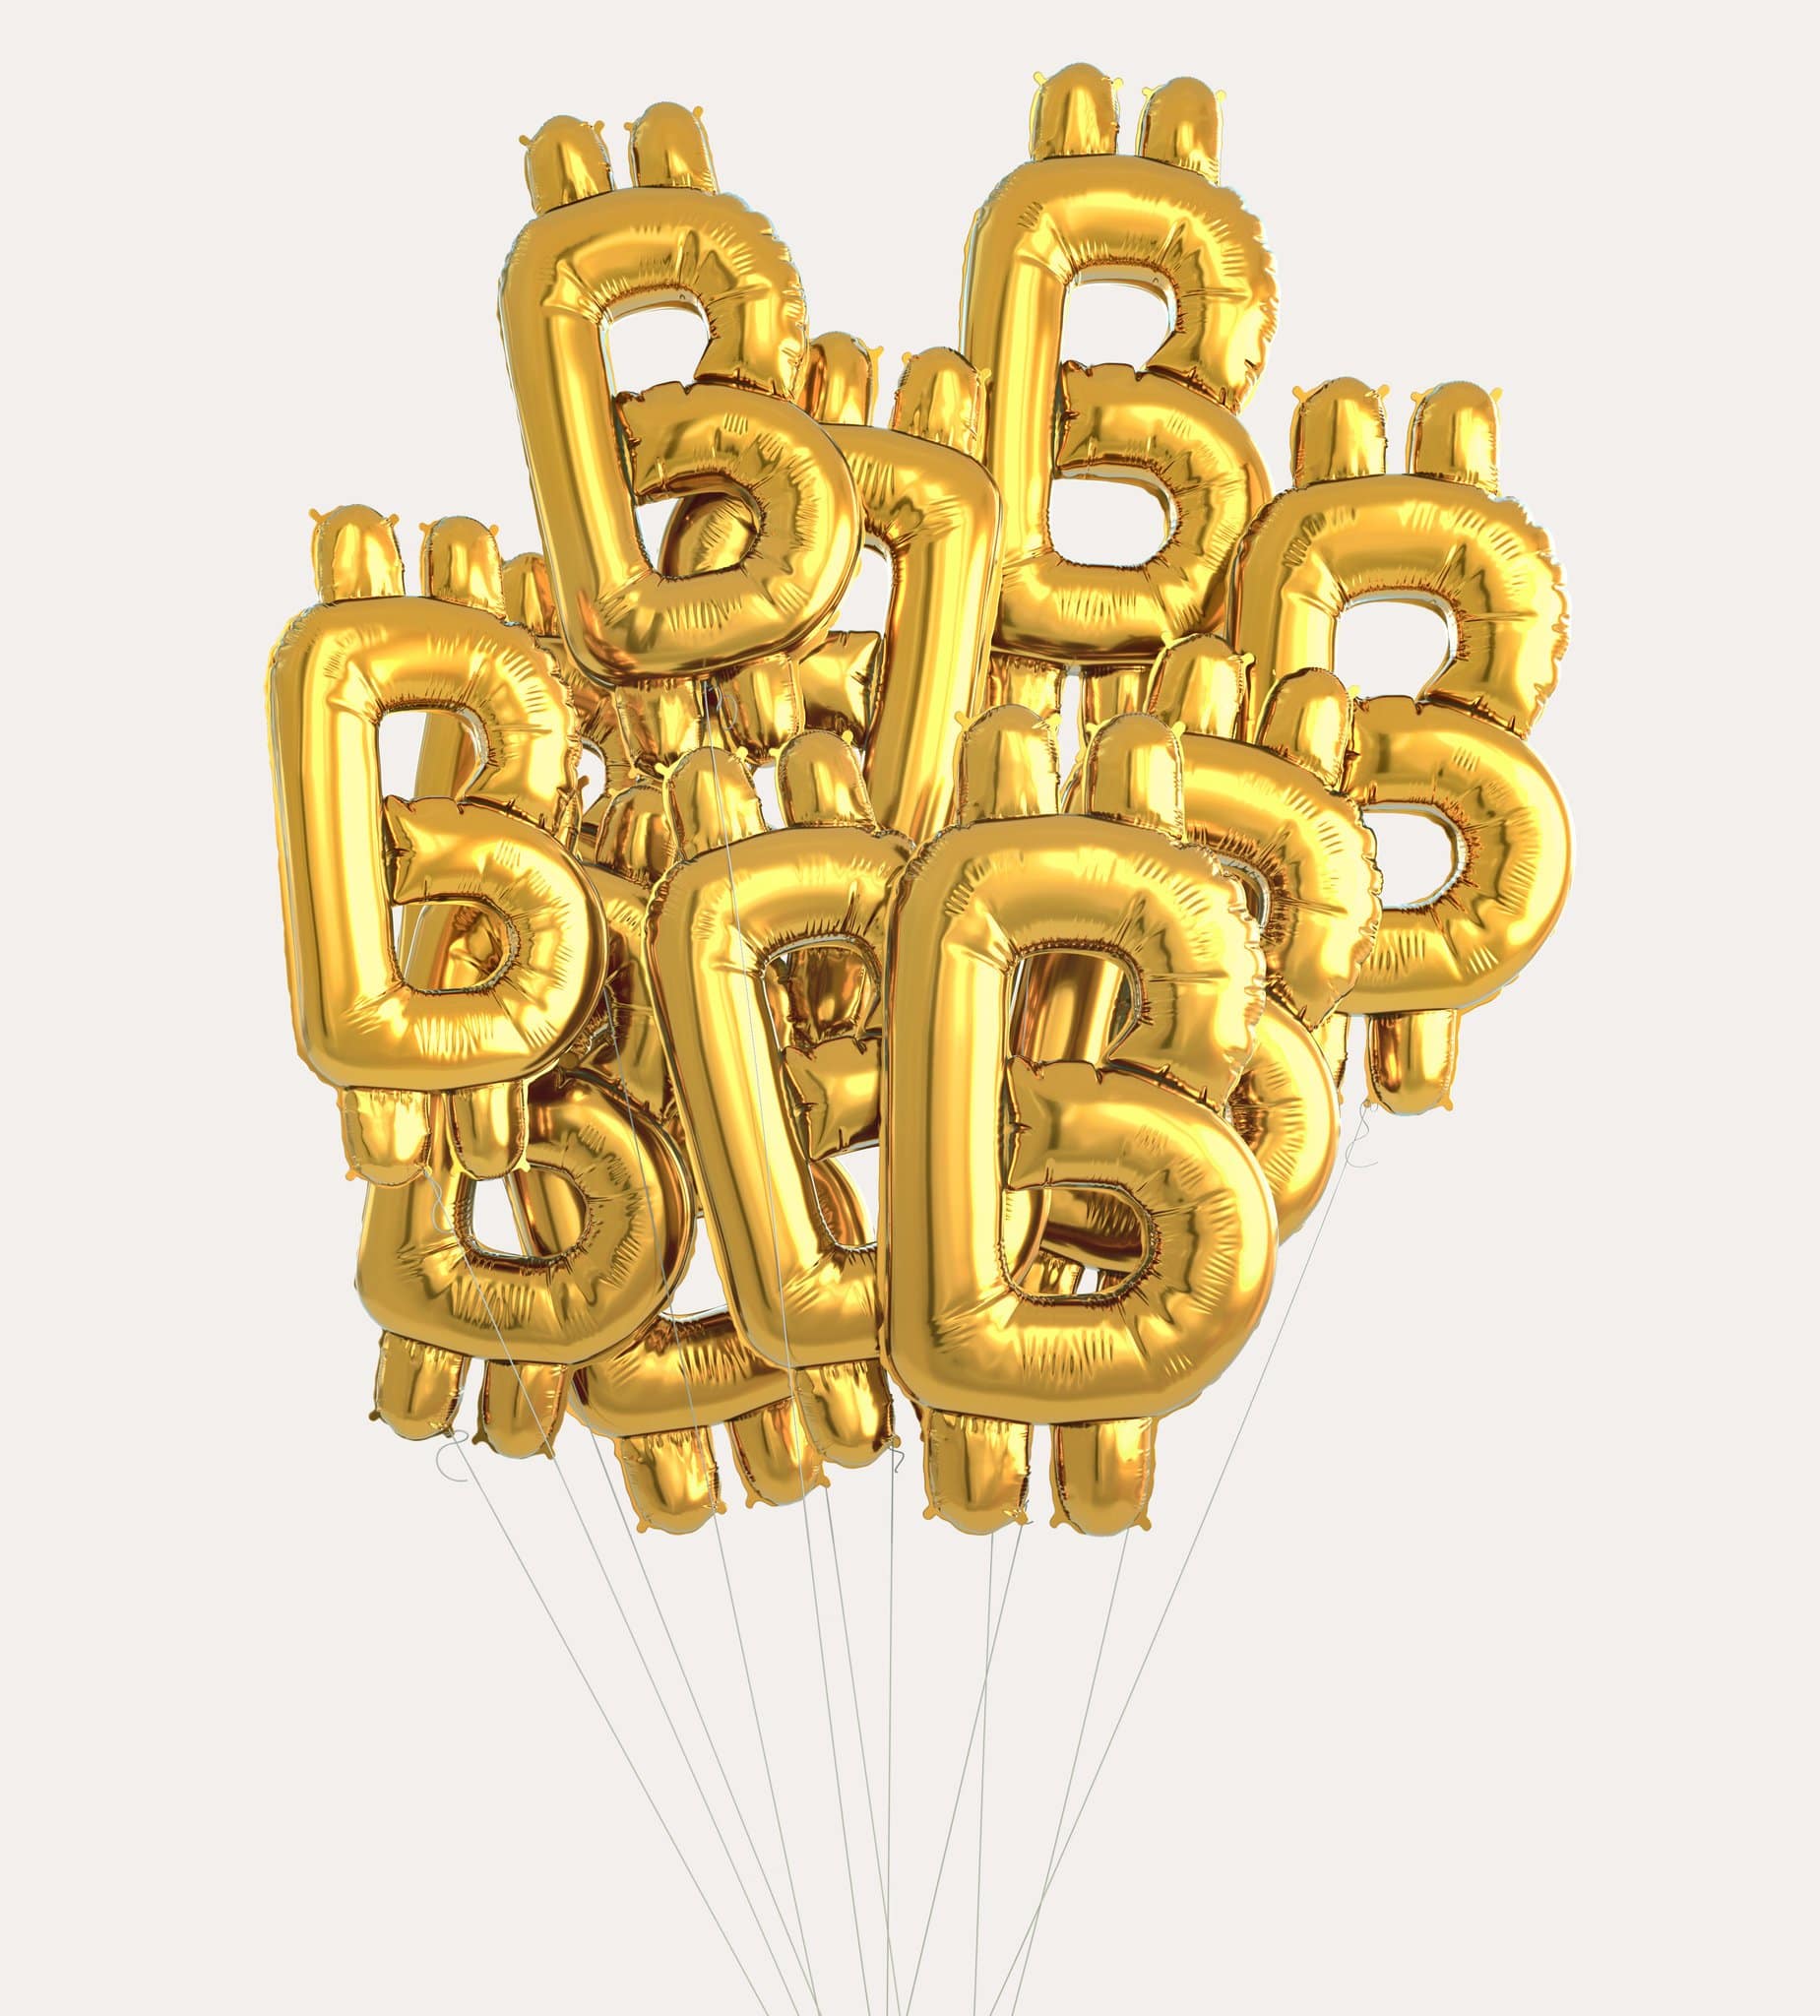 Bitcoin Balloons